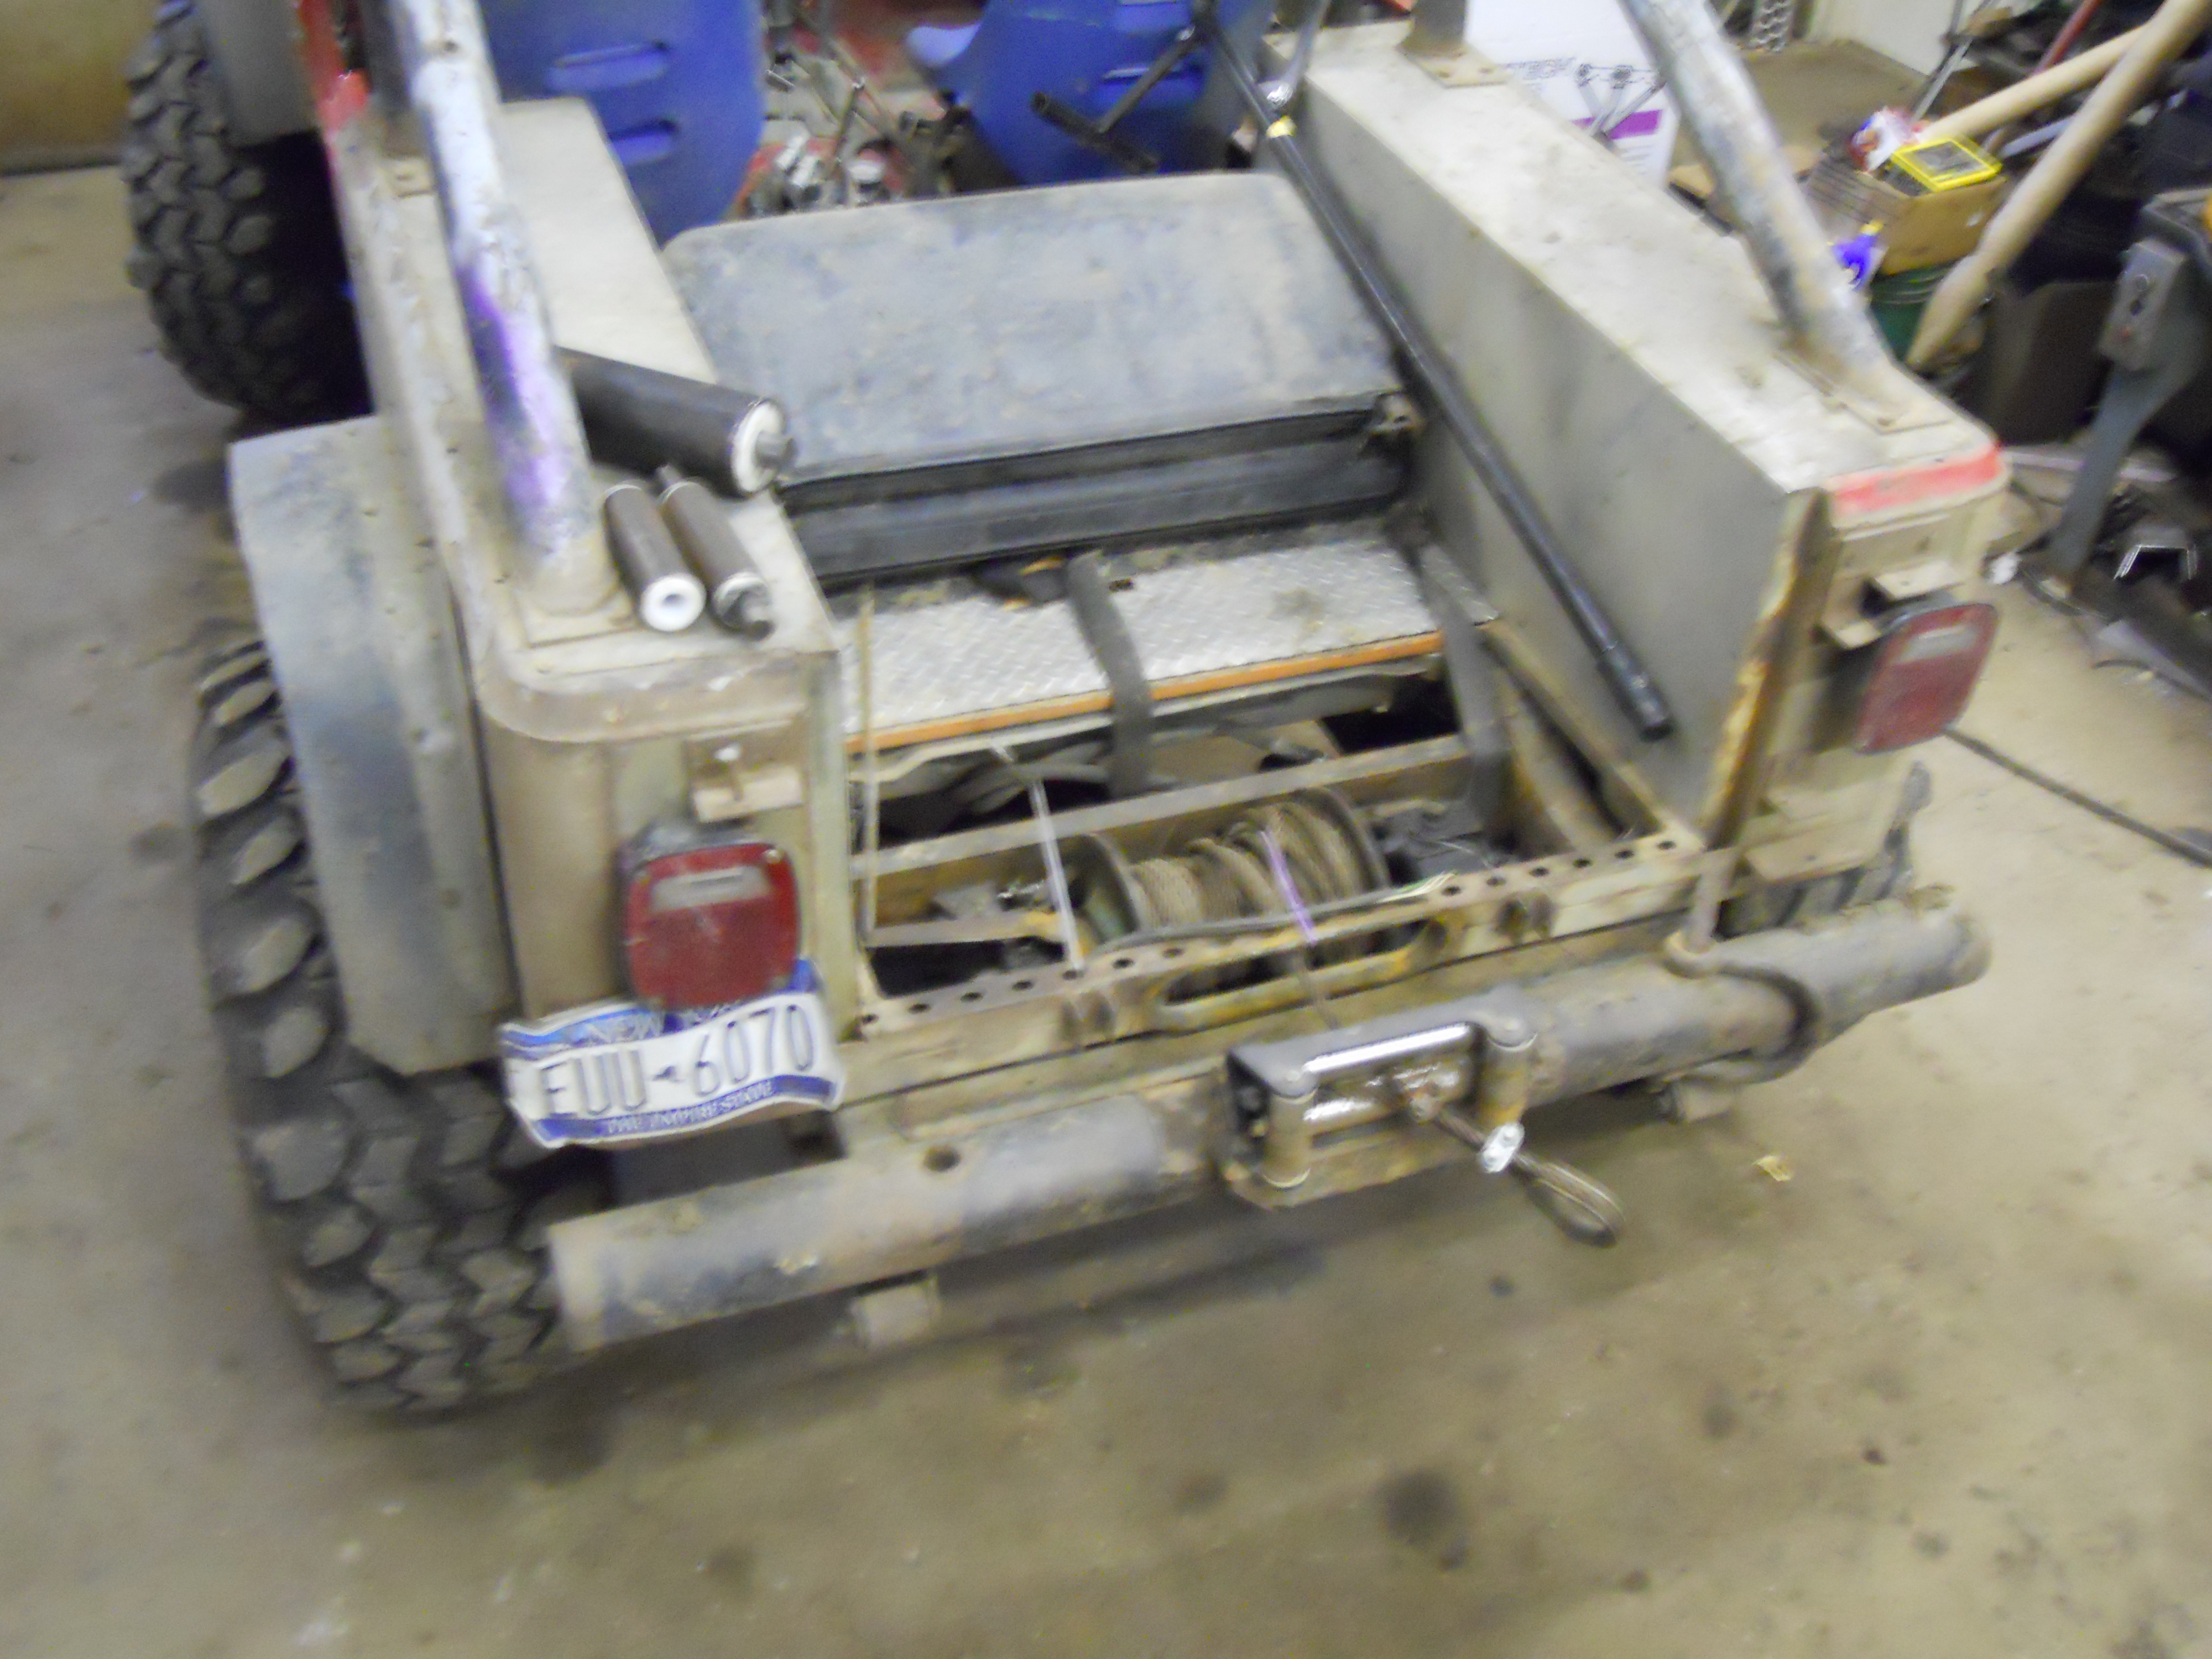 Jeep Scrambler hydraulic log skidder winch